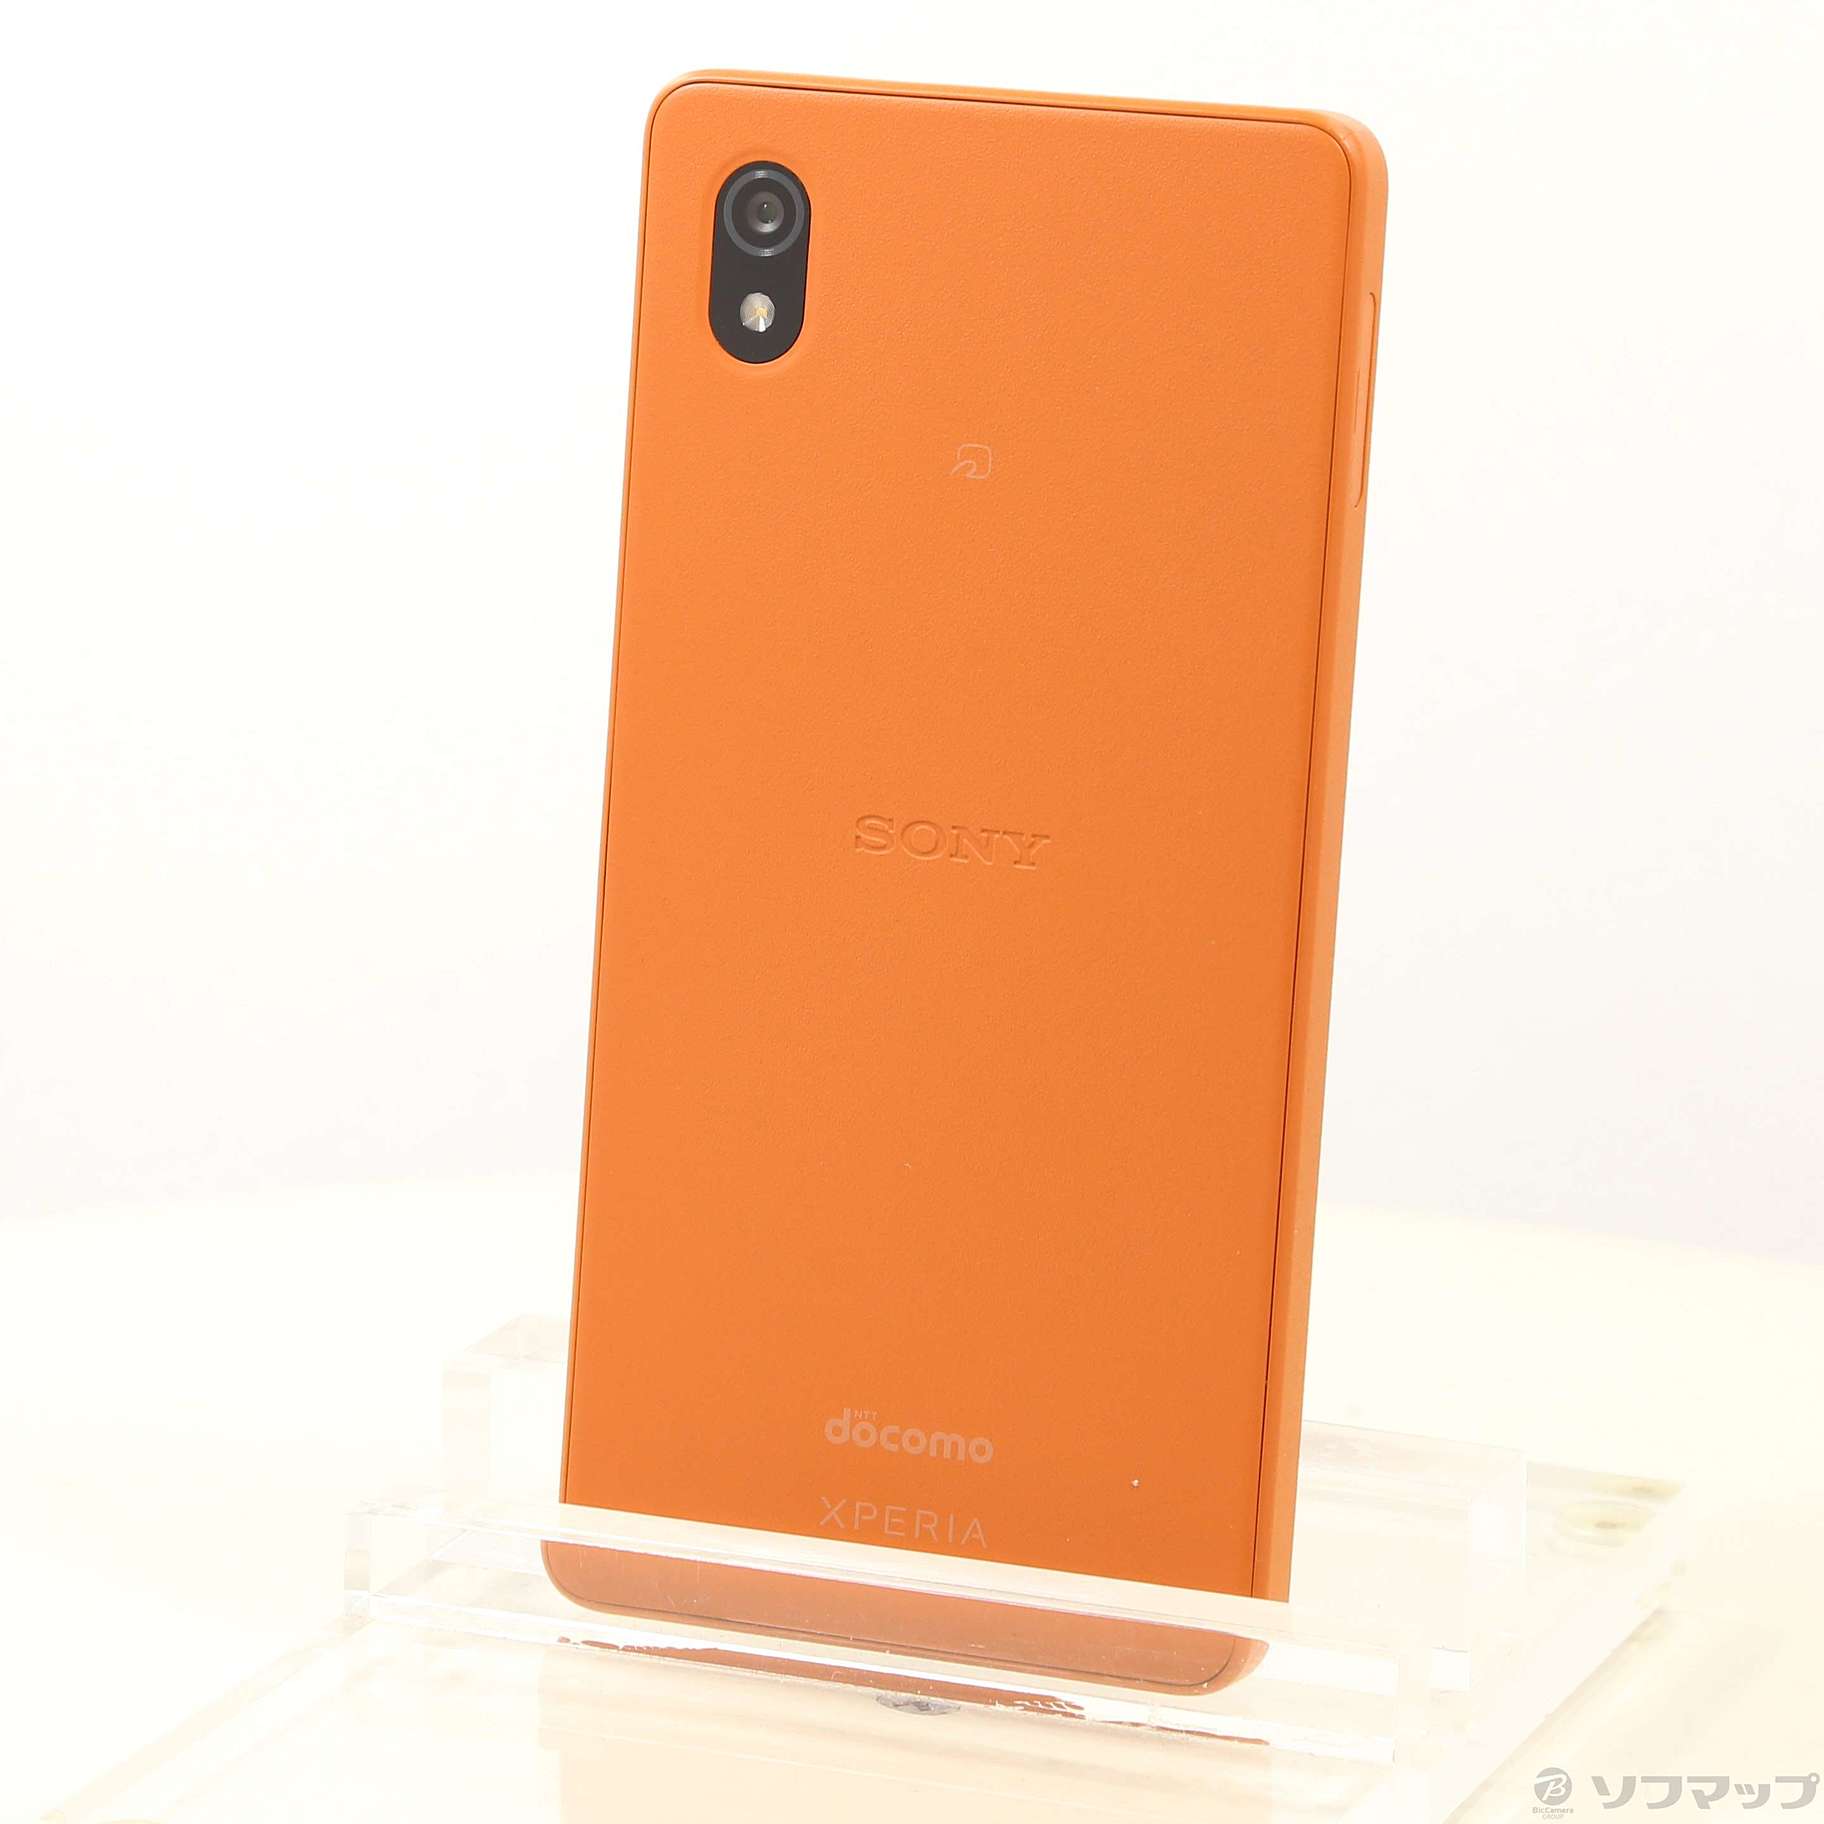 スマートフォン/携帯電話 スマートフォン本体 安心の関税送料込み 新品・未使用品 Xperia Ace III ブリックオレンジ 